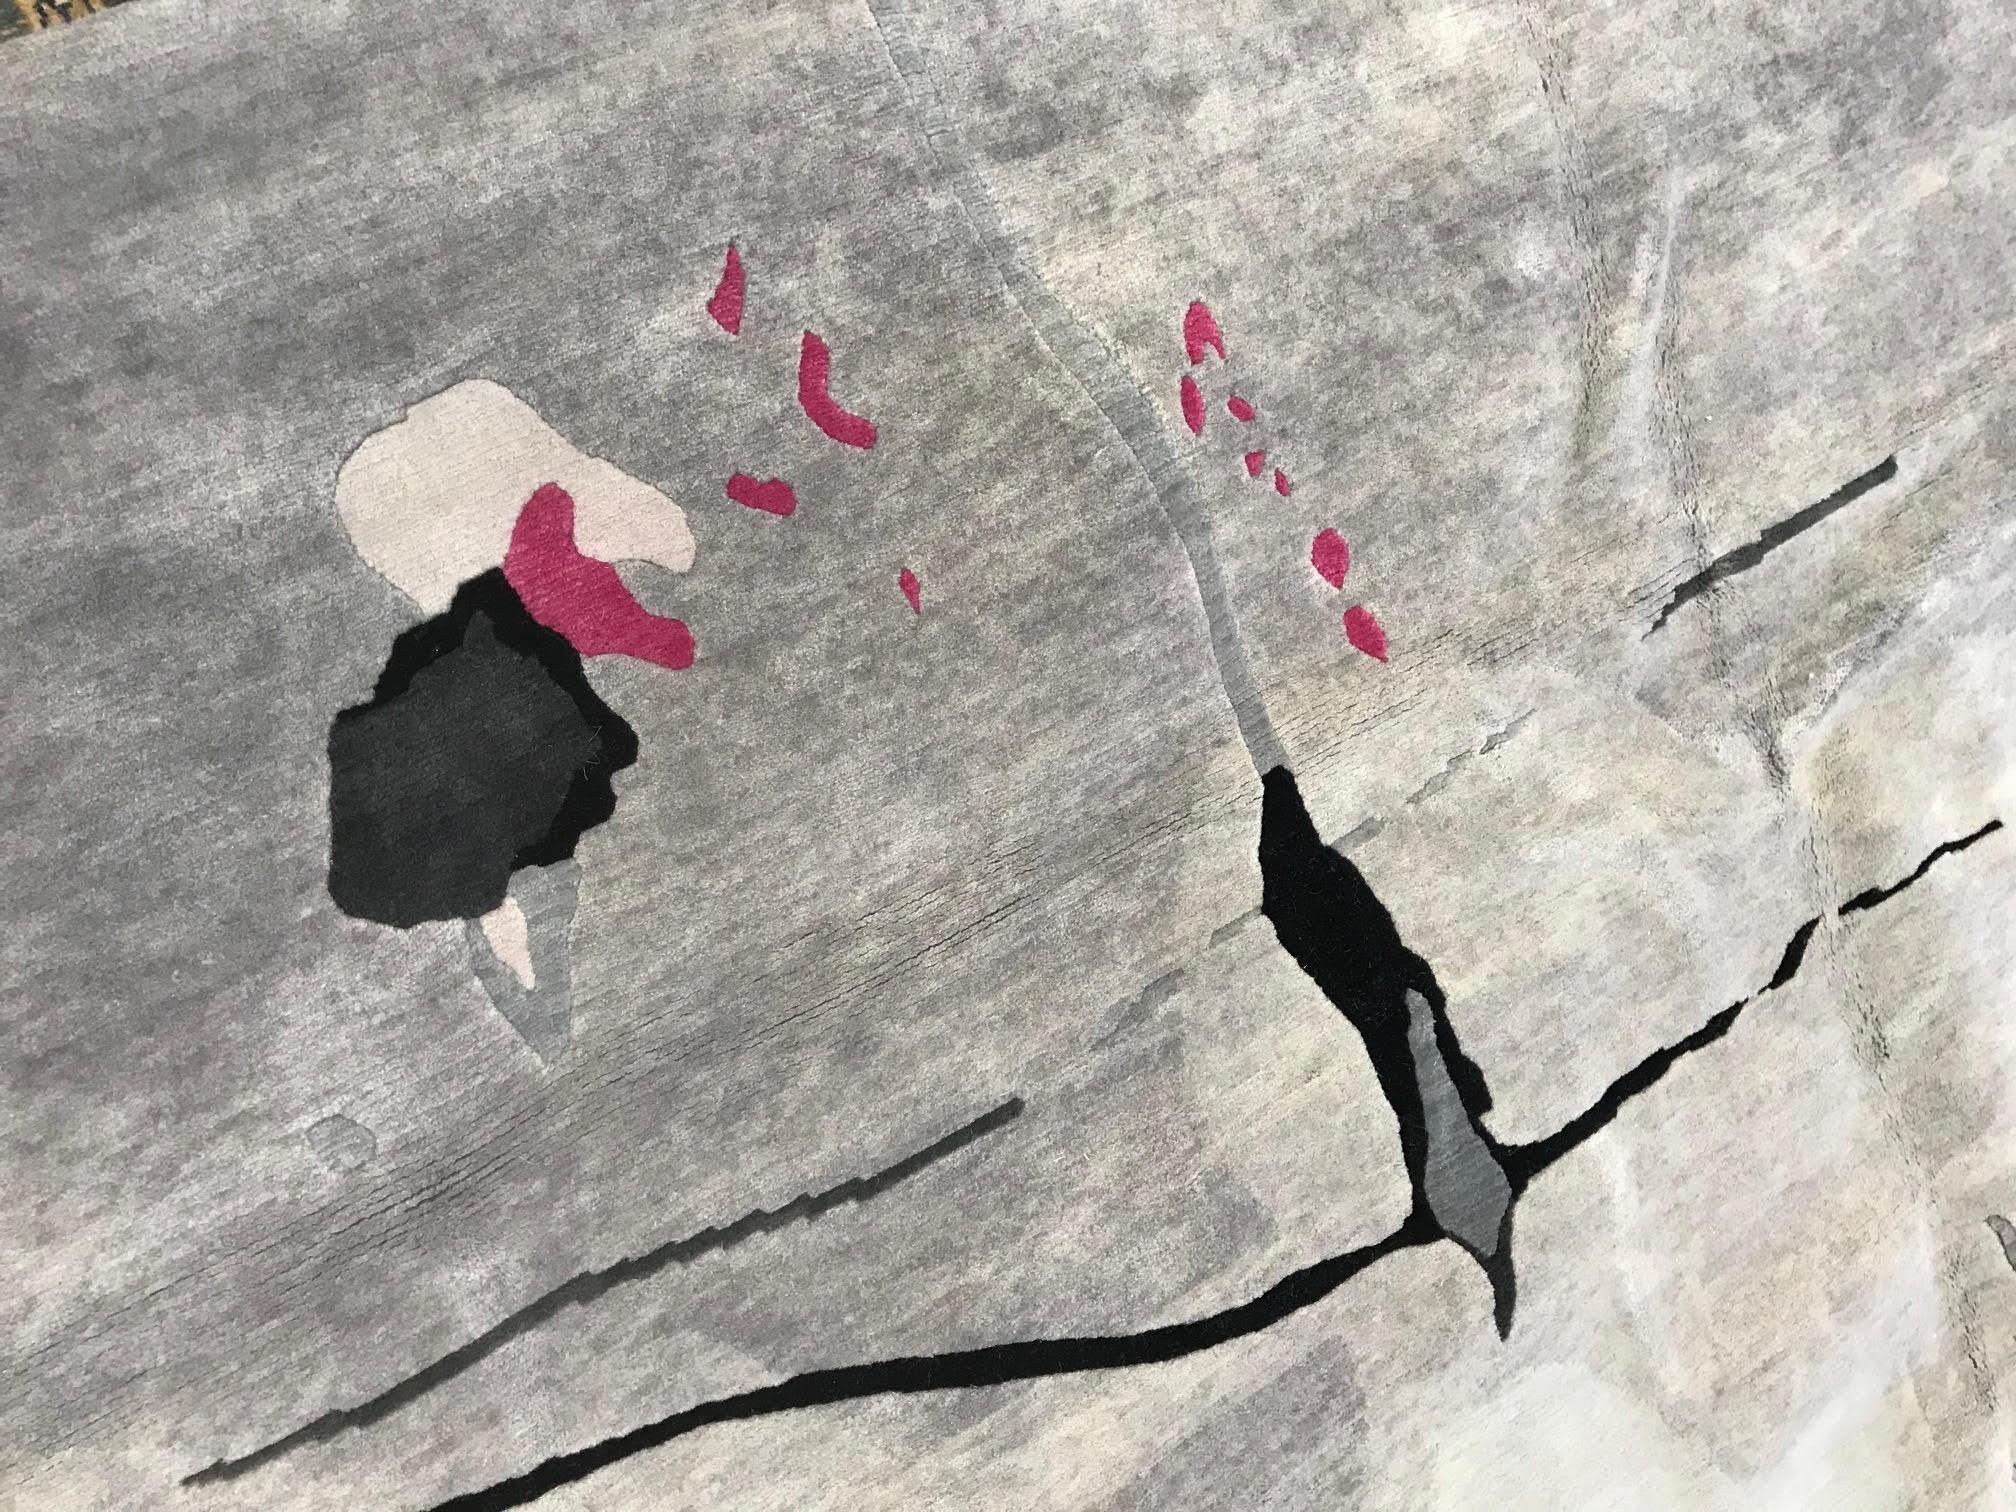 Tapis gris, ivoire et rose fait main par Eskayel pour Doris Leslie Blau.
Taille : 274 x 371 cm.
Un luxueux tapis de laine noué à la main dans des tons gris et ivoire, avec quelques touches de soie rose. Le motif est tiré de la collection de papier